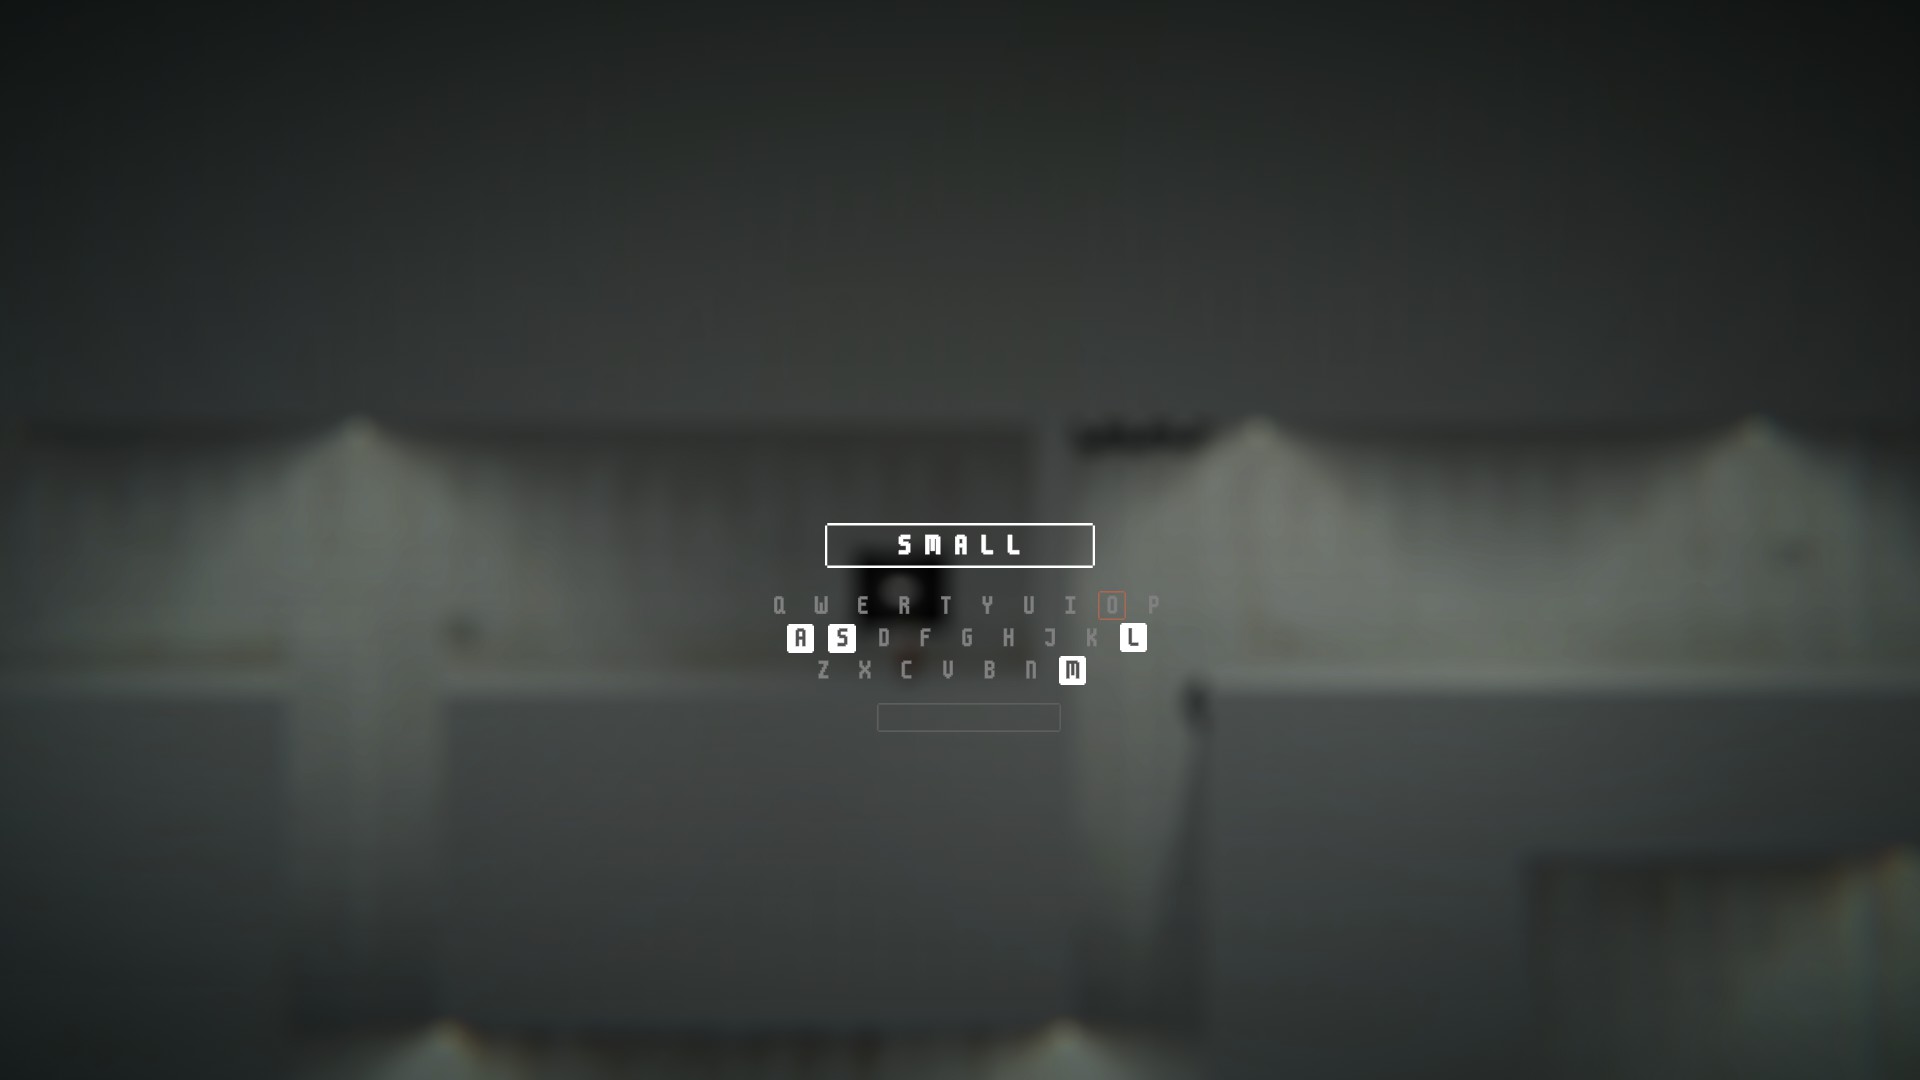 Image du jeu TYPO, montrant le clavier du jeu, permettant uniquement de taper le mot "SMALL"